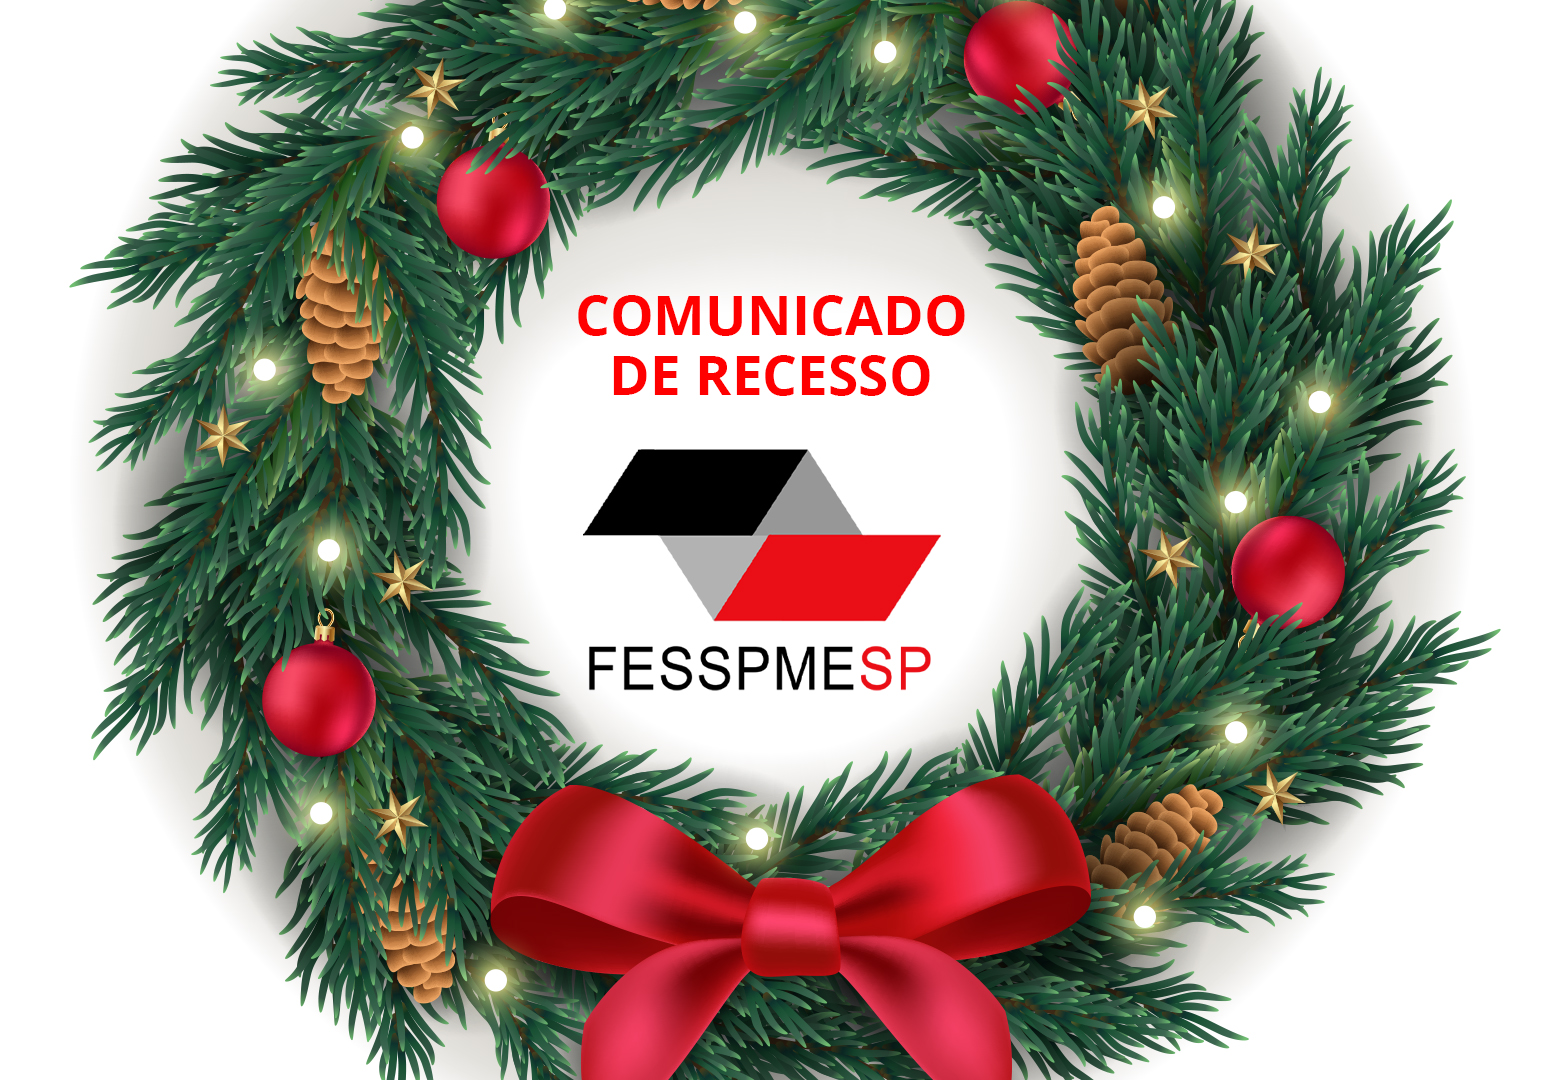 Comunicado de recesso FESSPMESP 2020